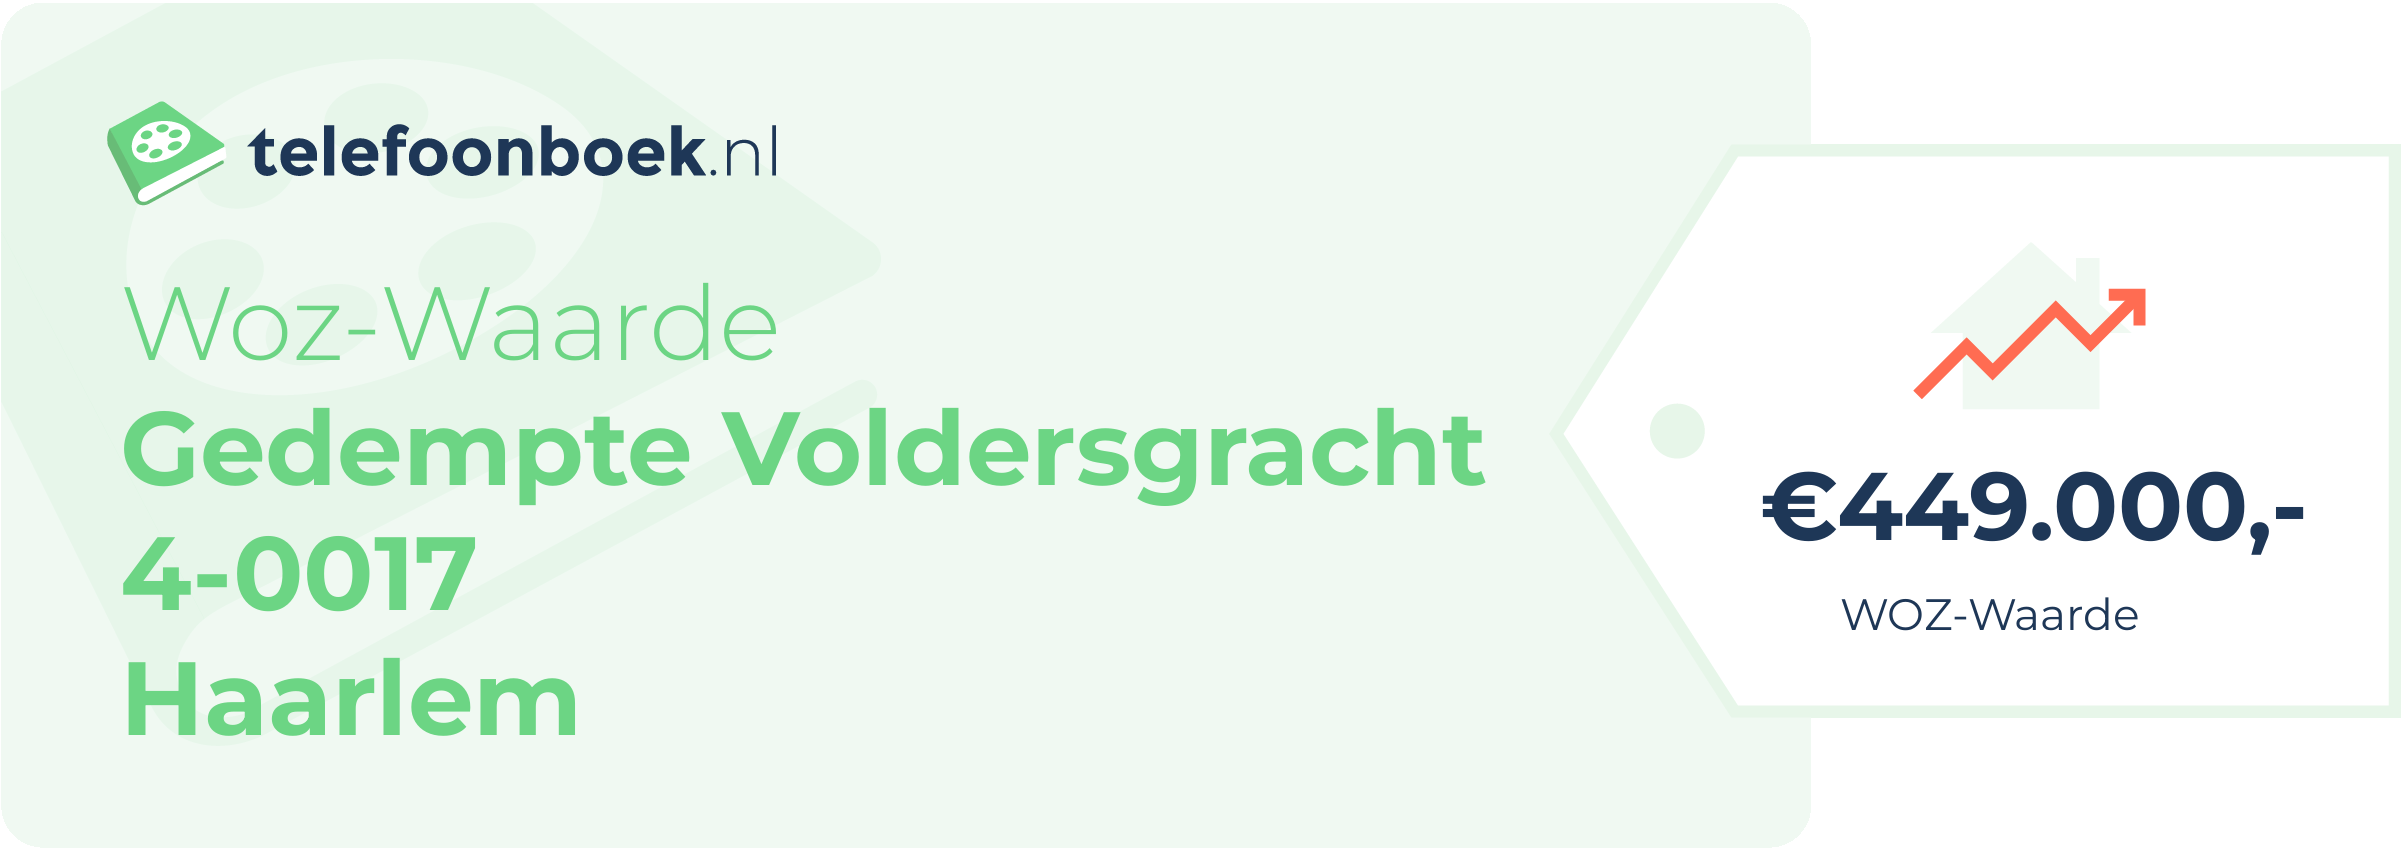 WOZ-waarde Gedempte Voldersgracht 4-0017 Haarlem